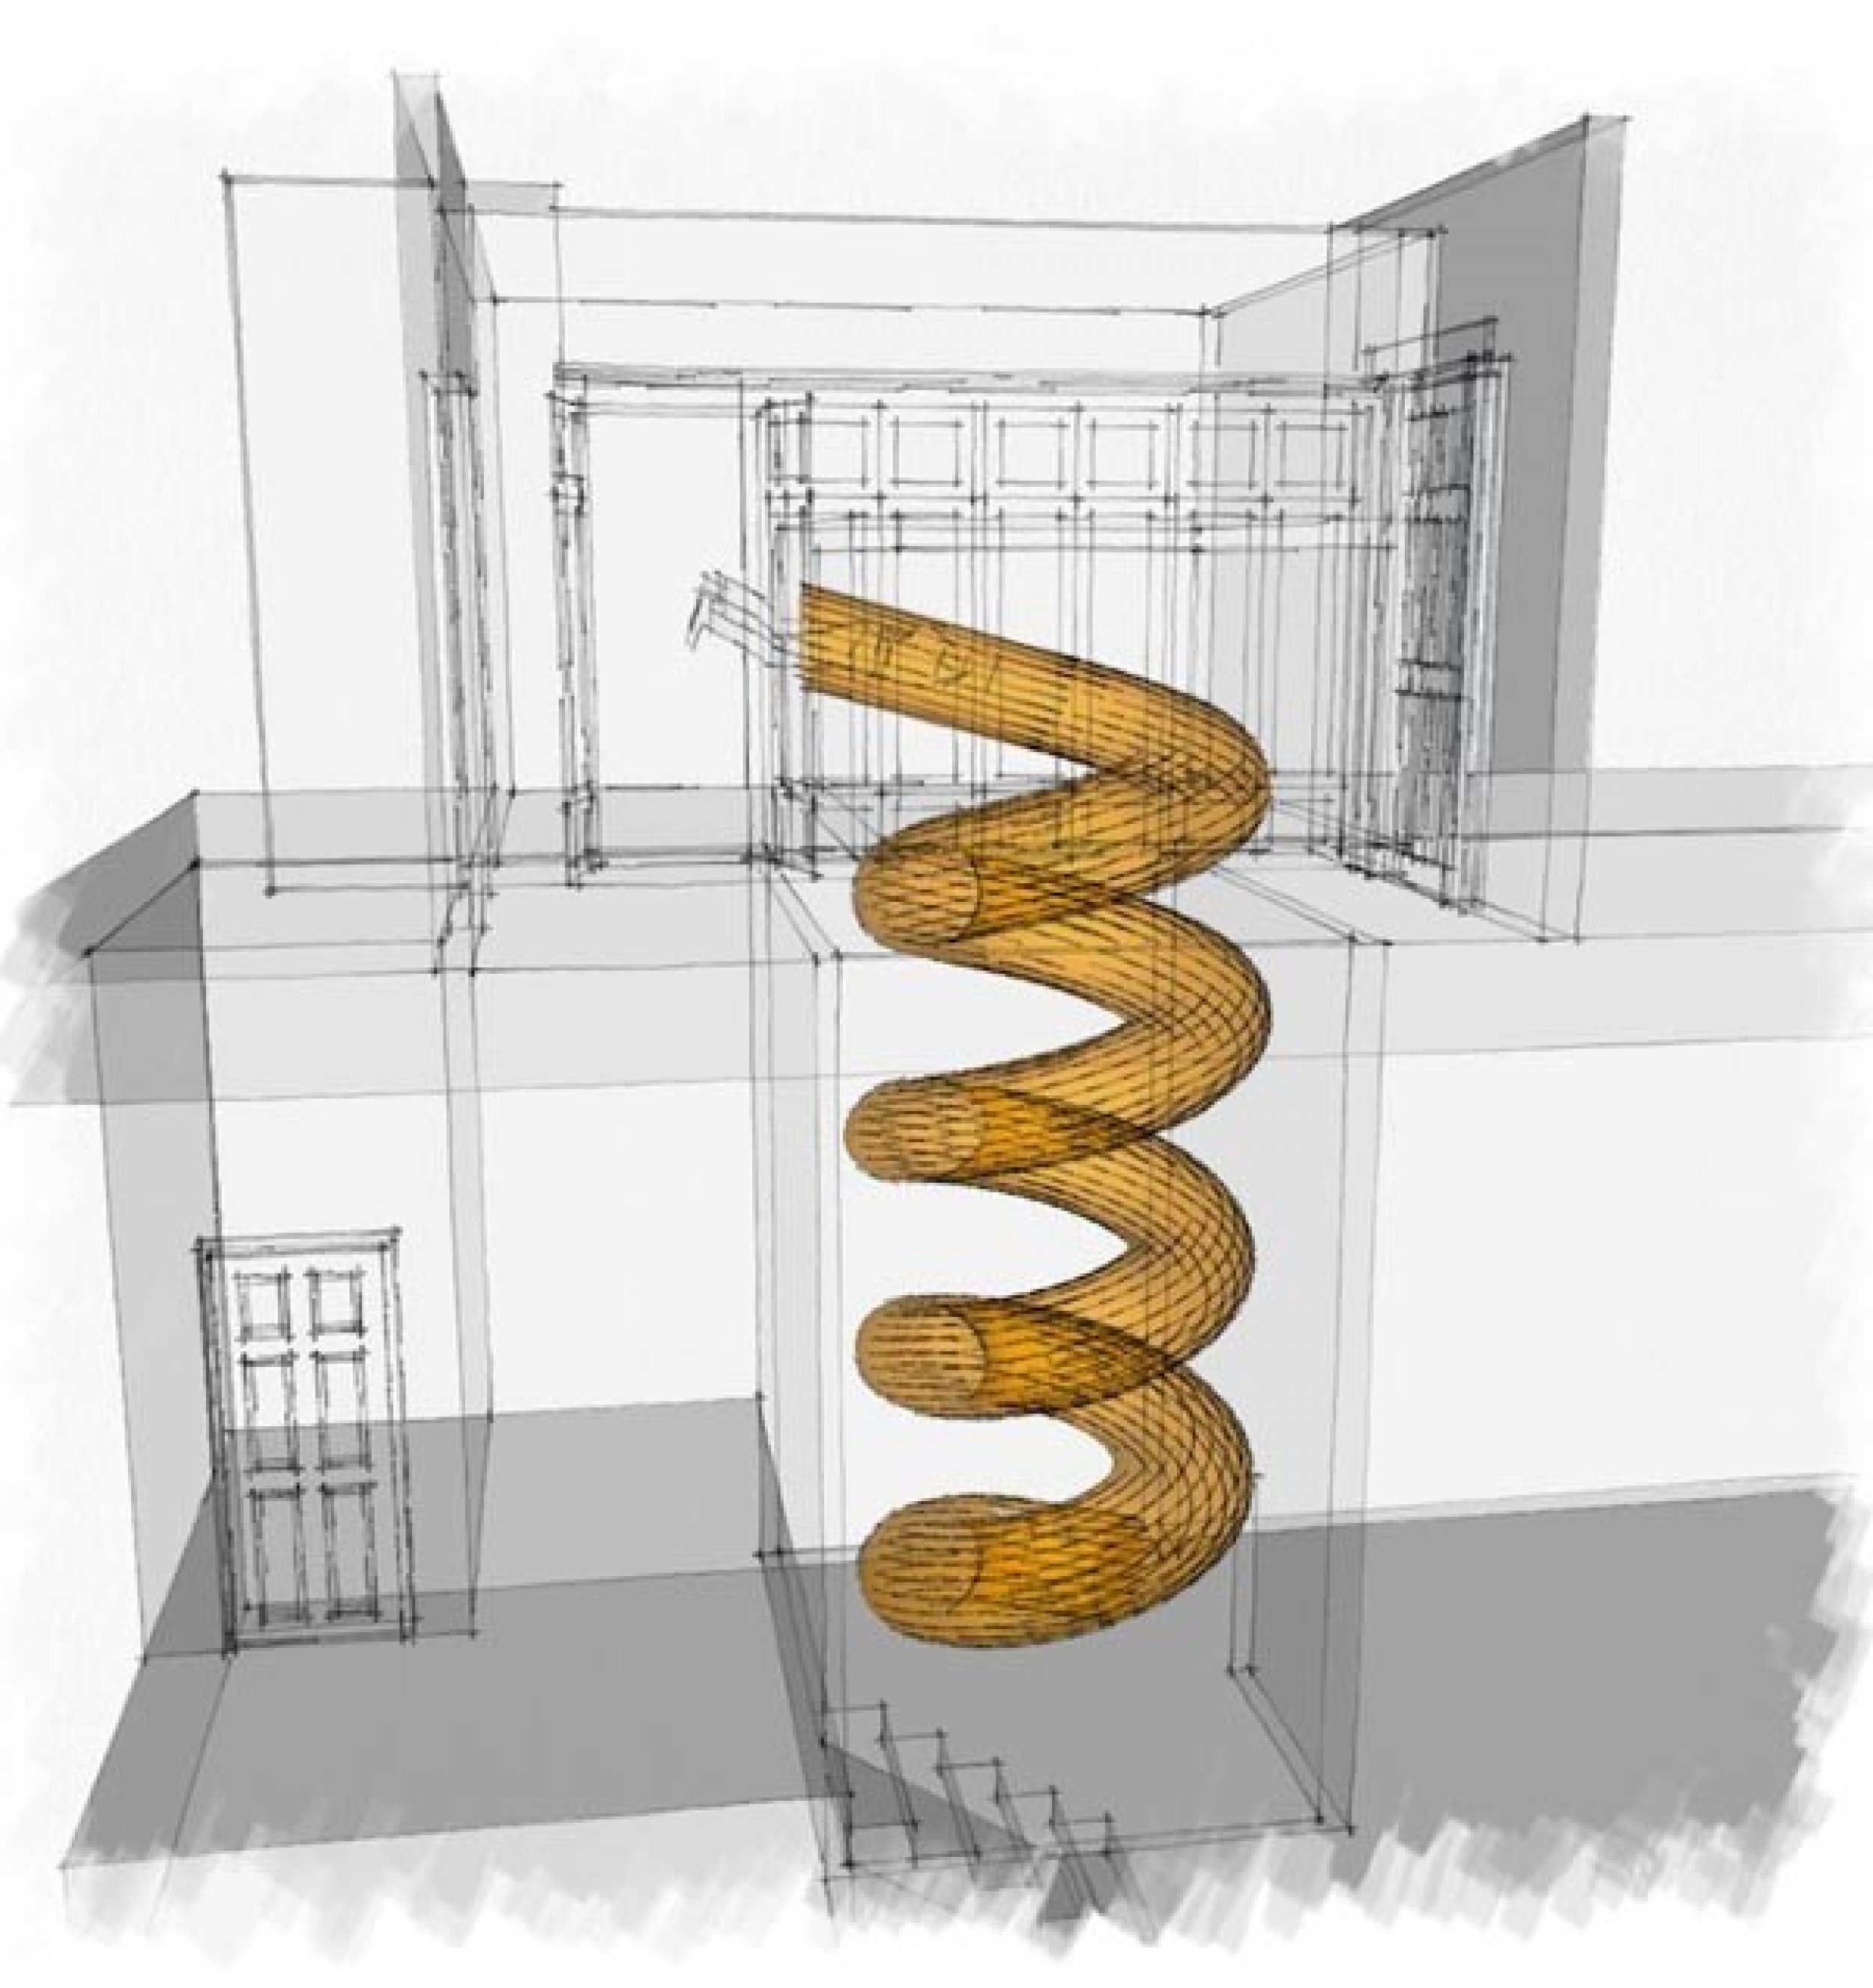 3-D drawing of the spiral slide design